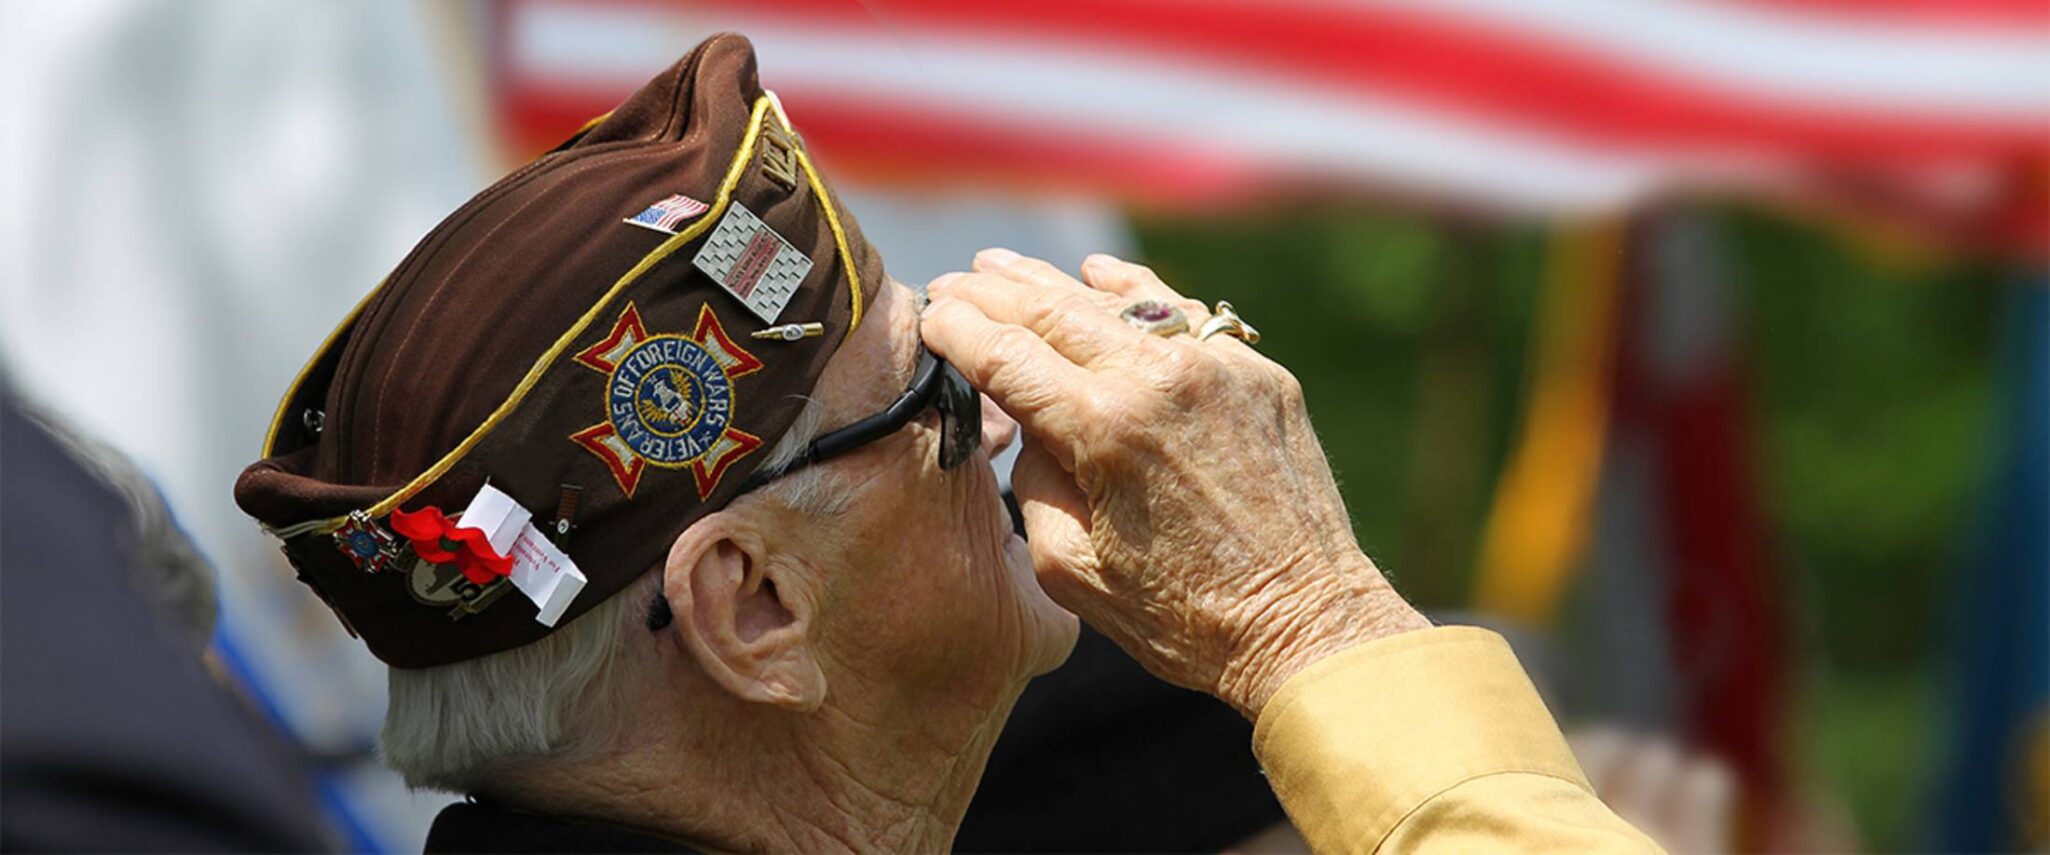 senior veteran saluting the American flag